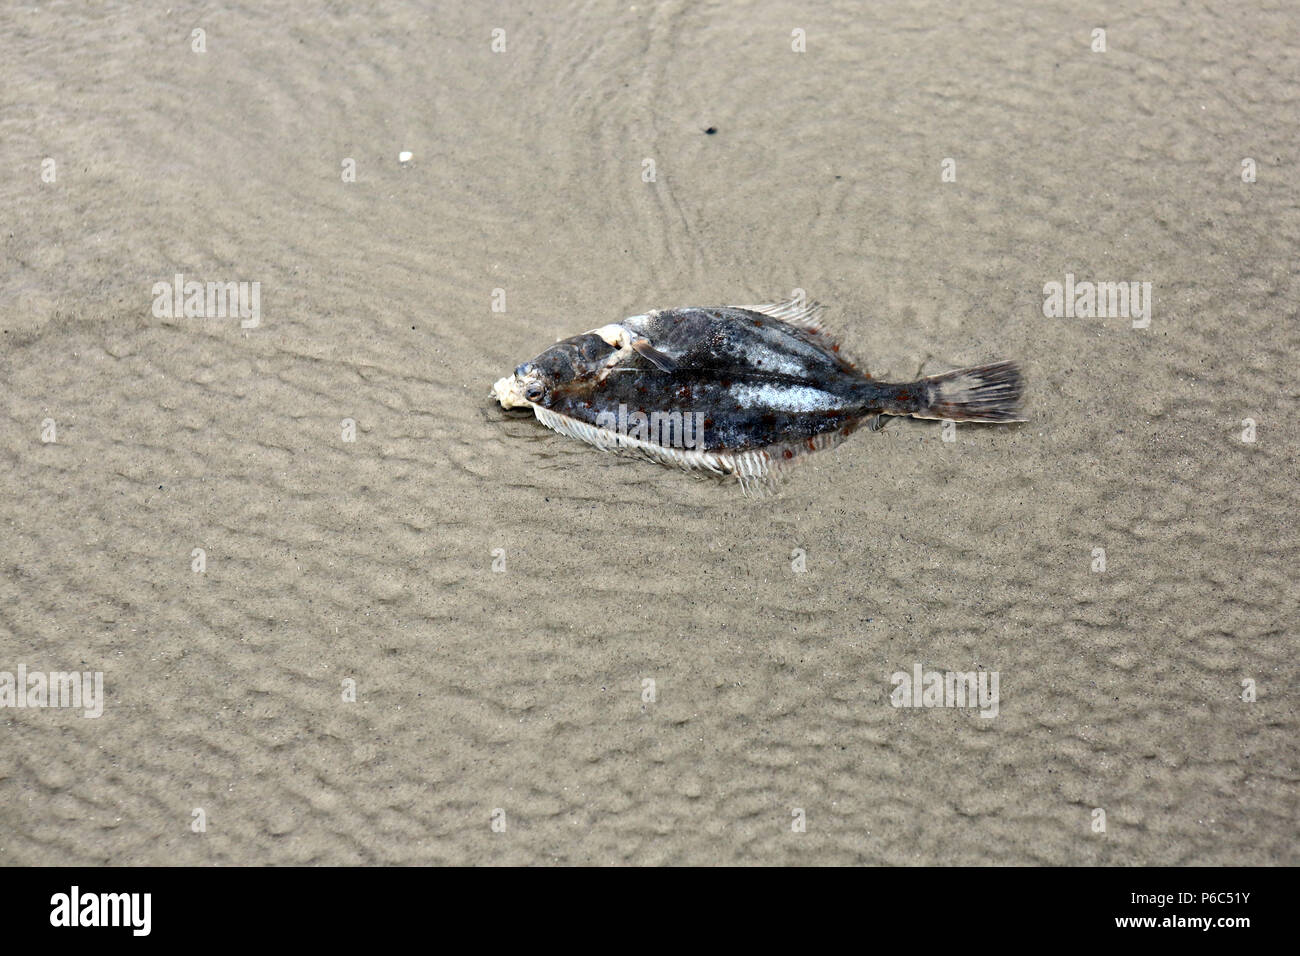 Wustrow, Germany - Dead flounder on the beach Stock Photo